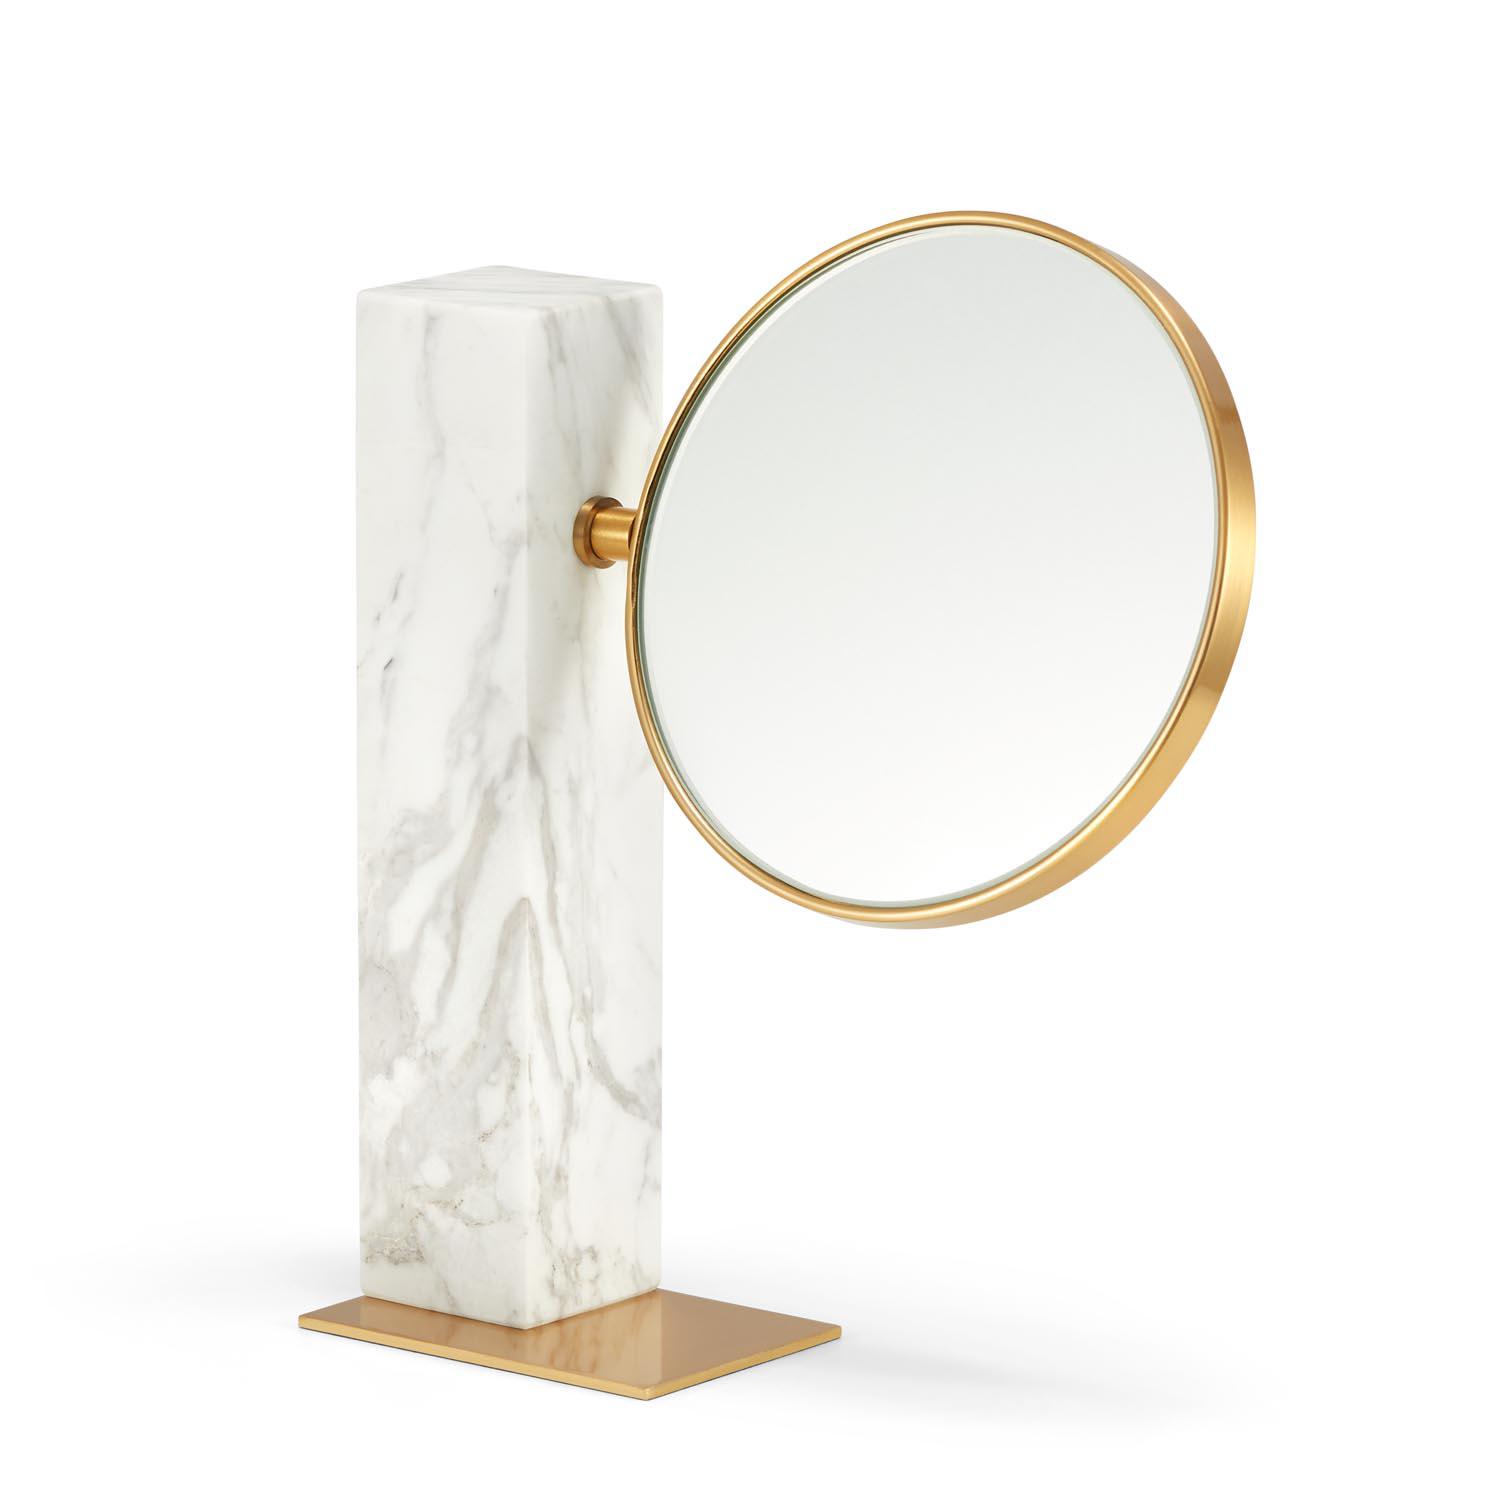 IMPRESS - złote okrągłe kosmetyczne lusterko na białej marmurowej podstawce